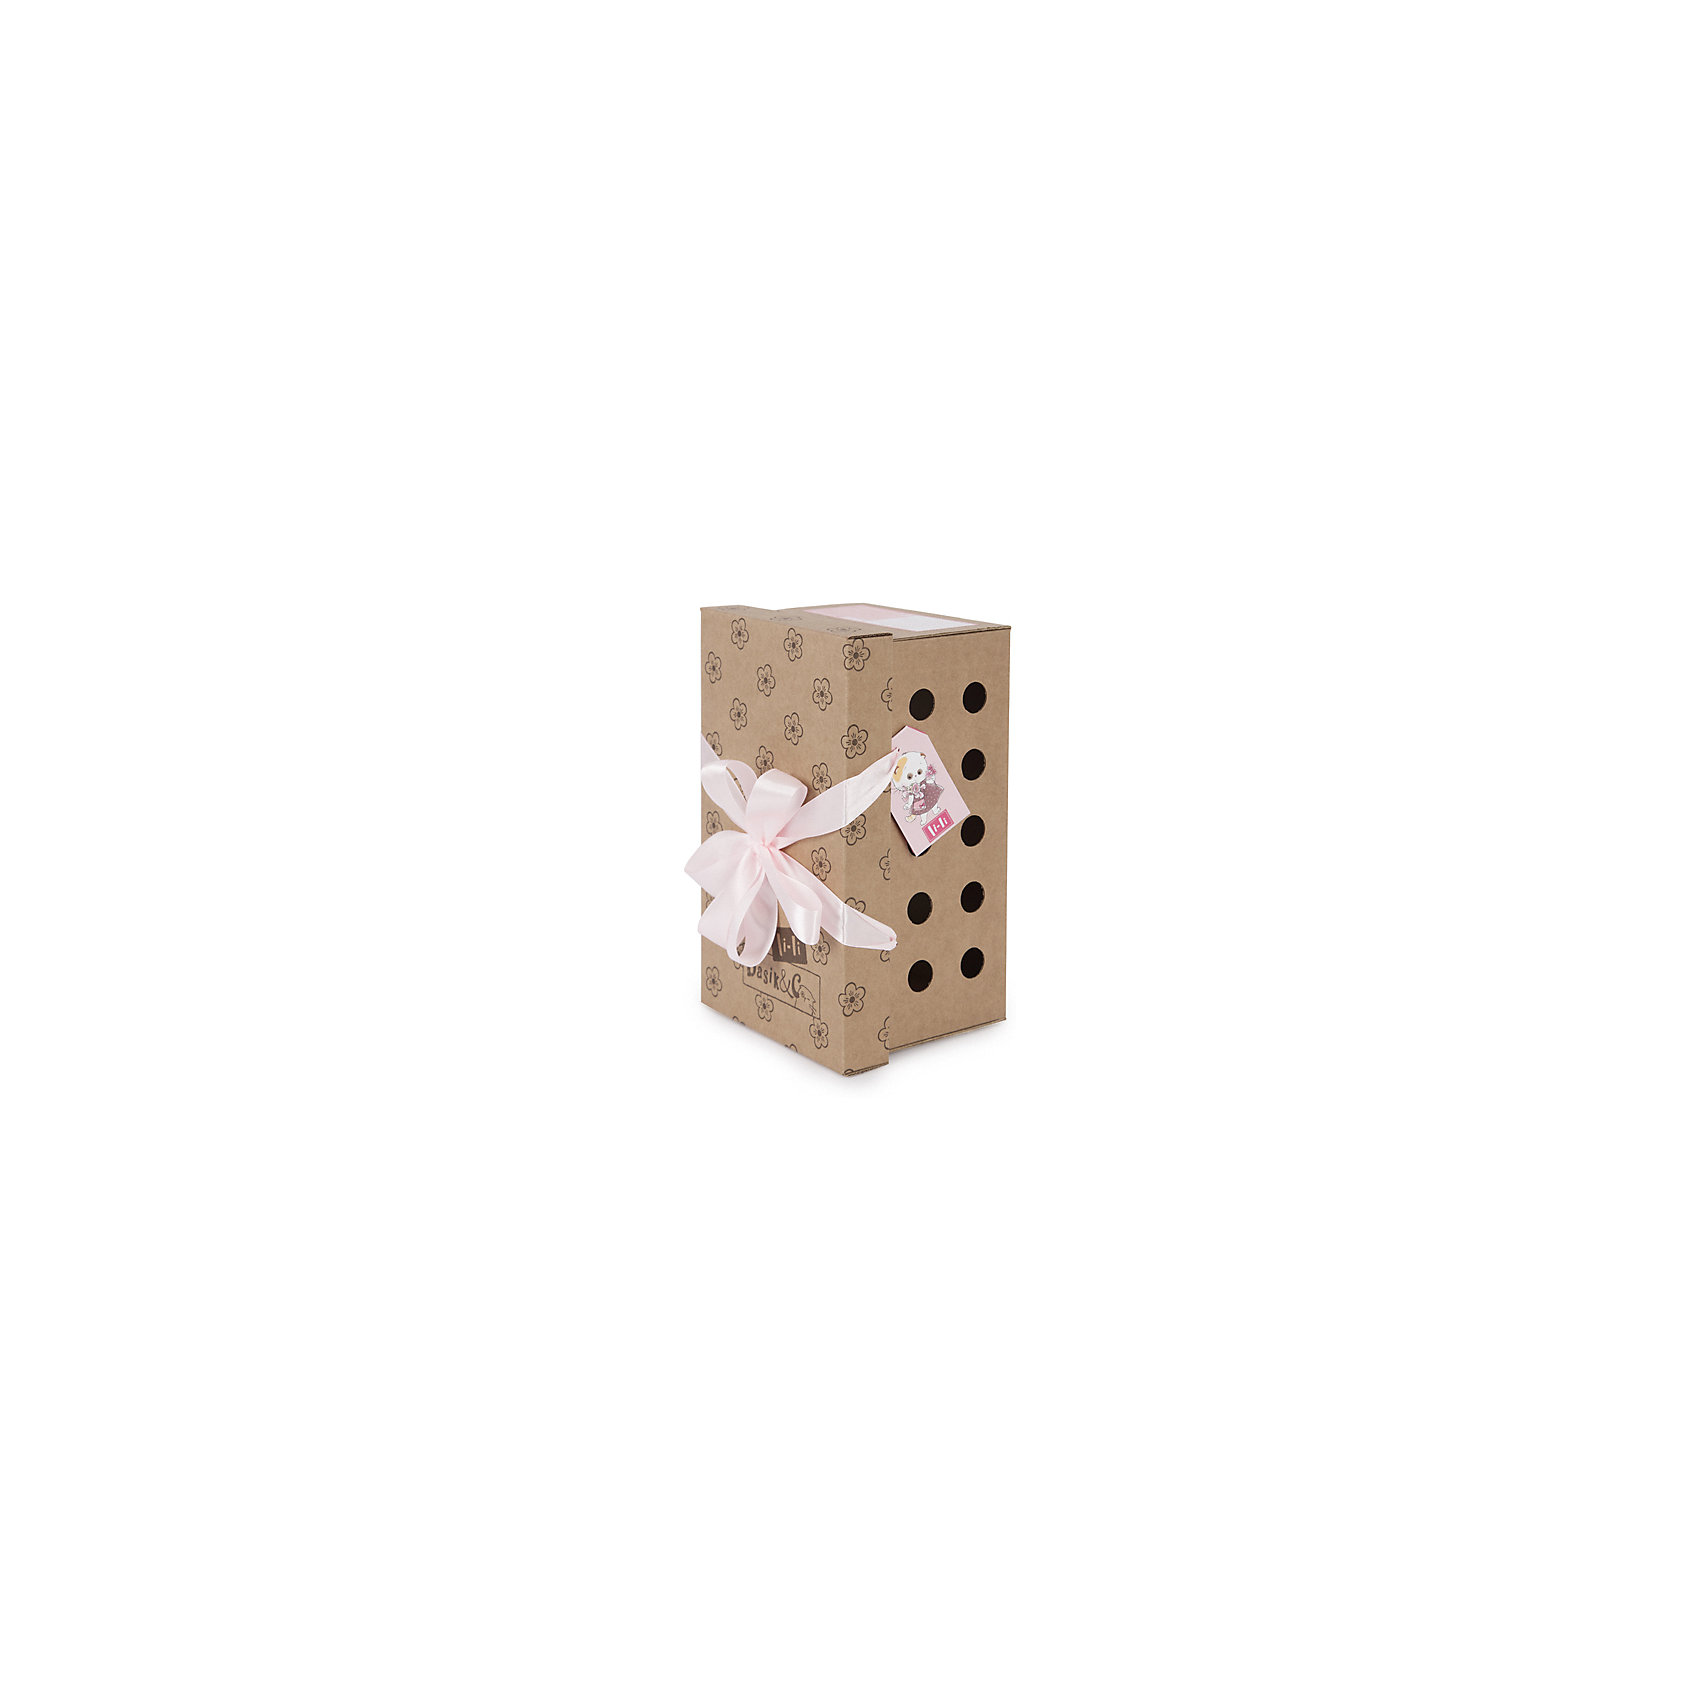 Мягкая игрушка Кошечка Ли-Ли в блузке с клубничками, 27 см Budi Basa 16816227